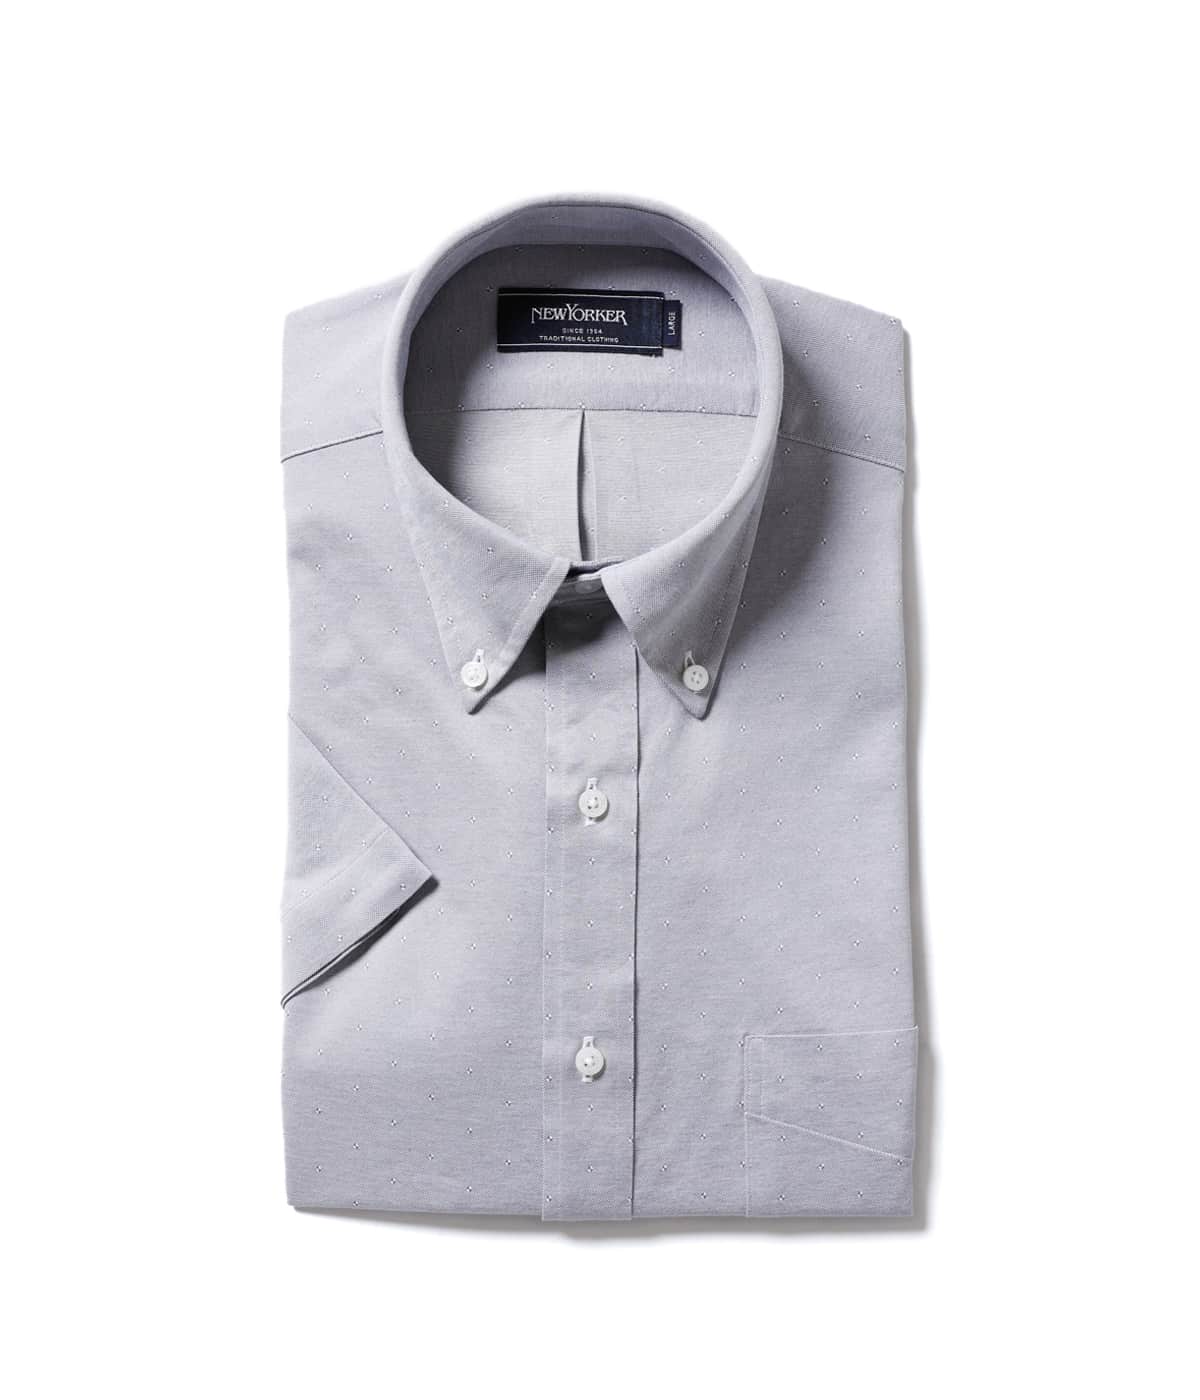 【COOL COMFORT(吸水速乾)】スクエア小紋ジャージー 半袖ショートボタンダウンシャツ